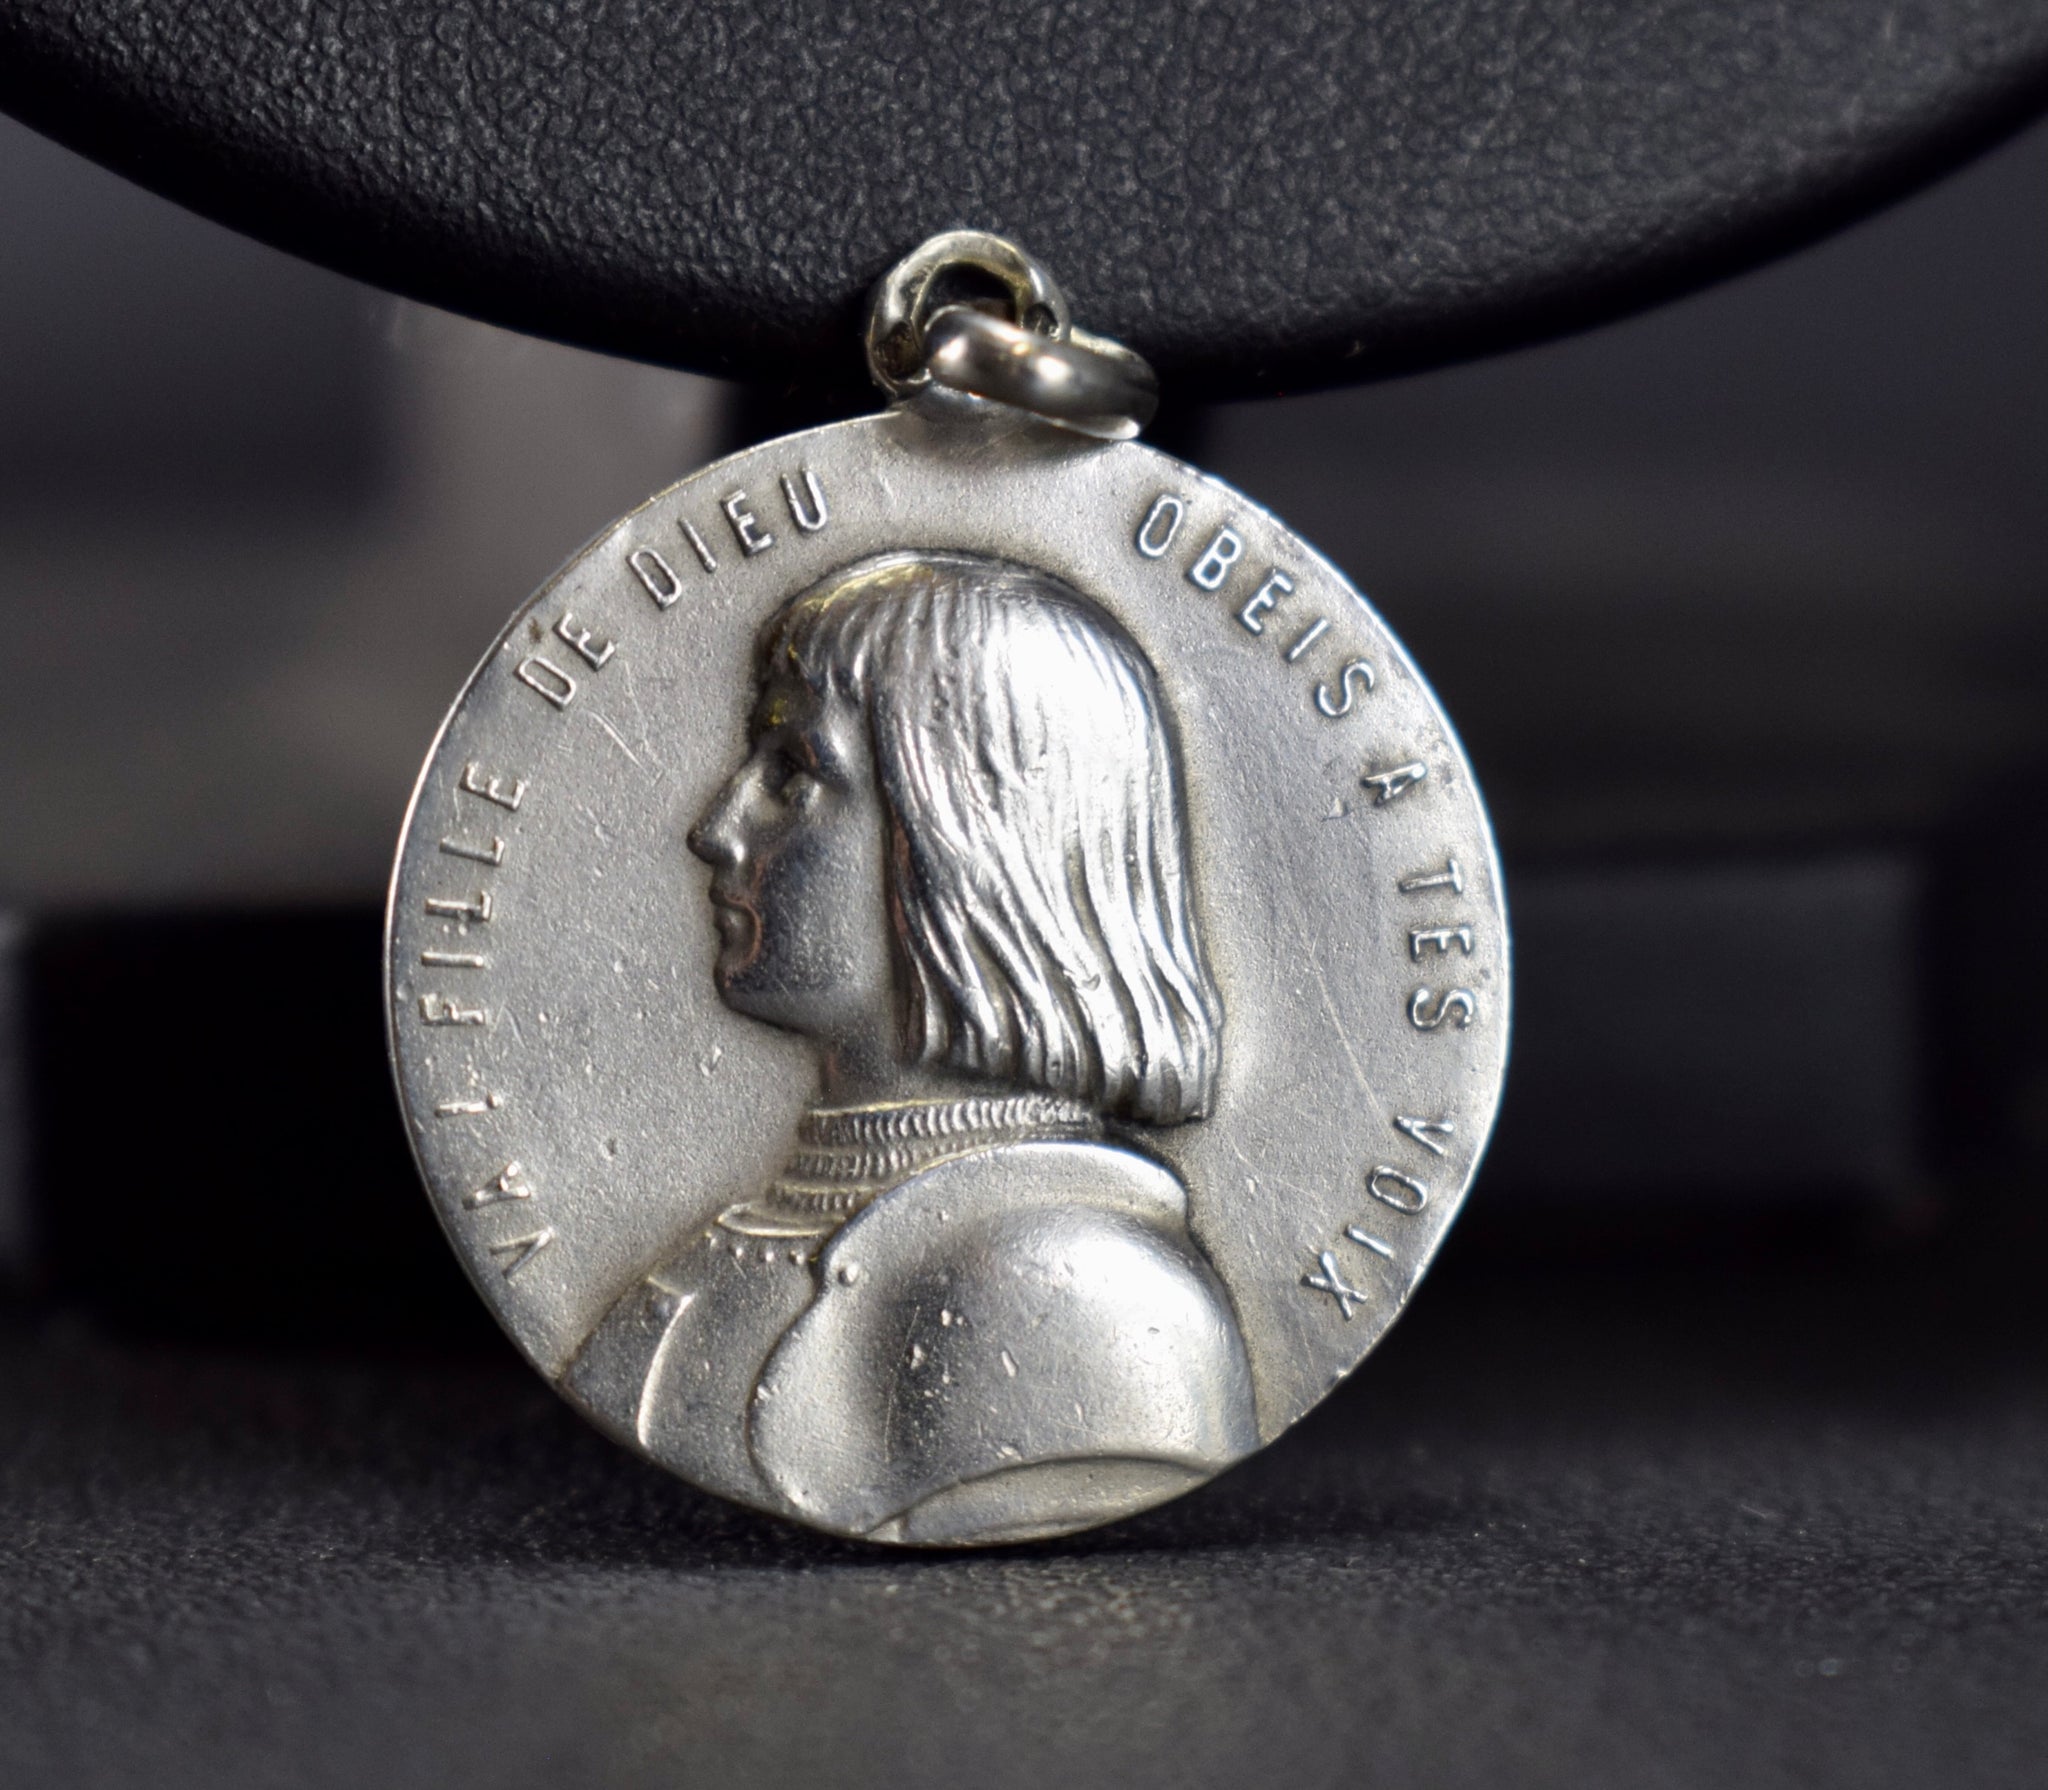 St Joan of Arc Penin Medal